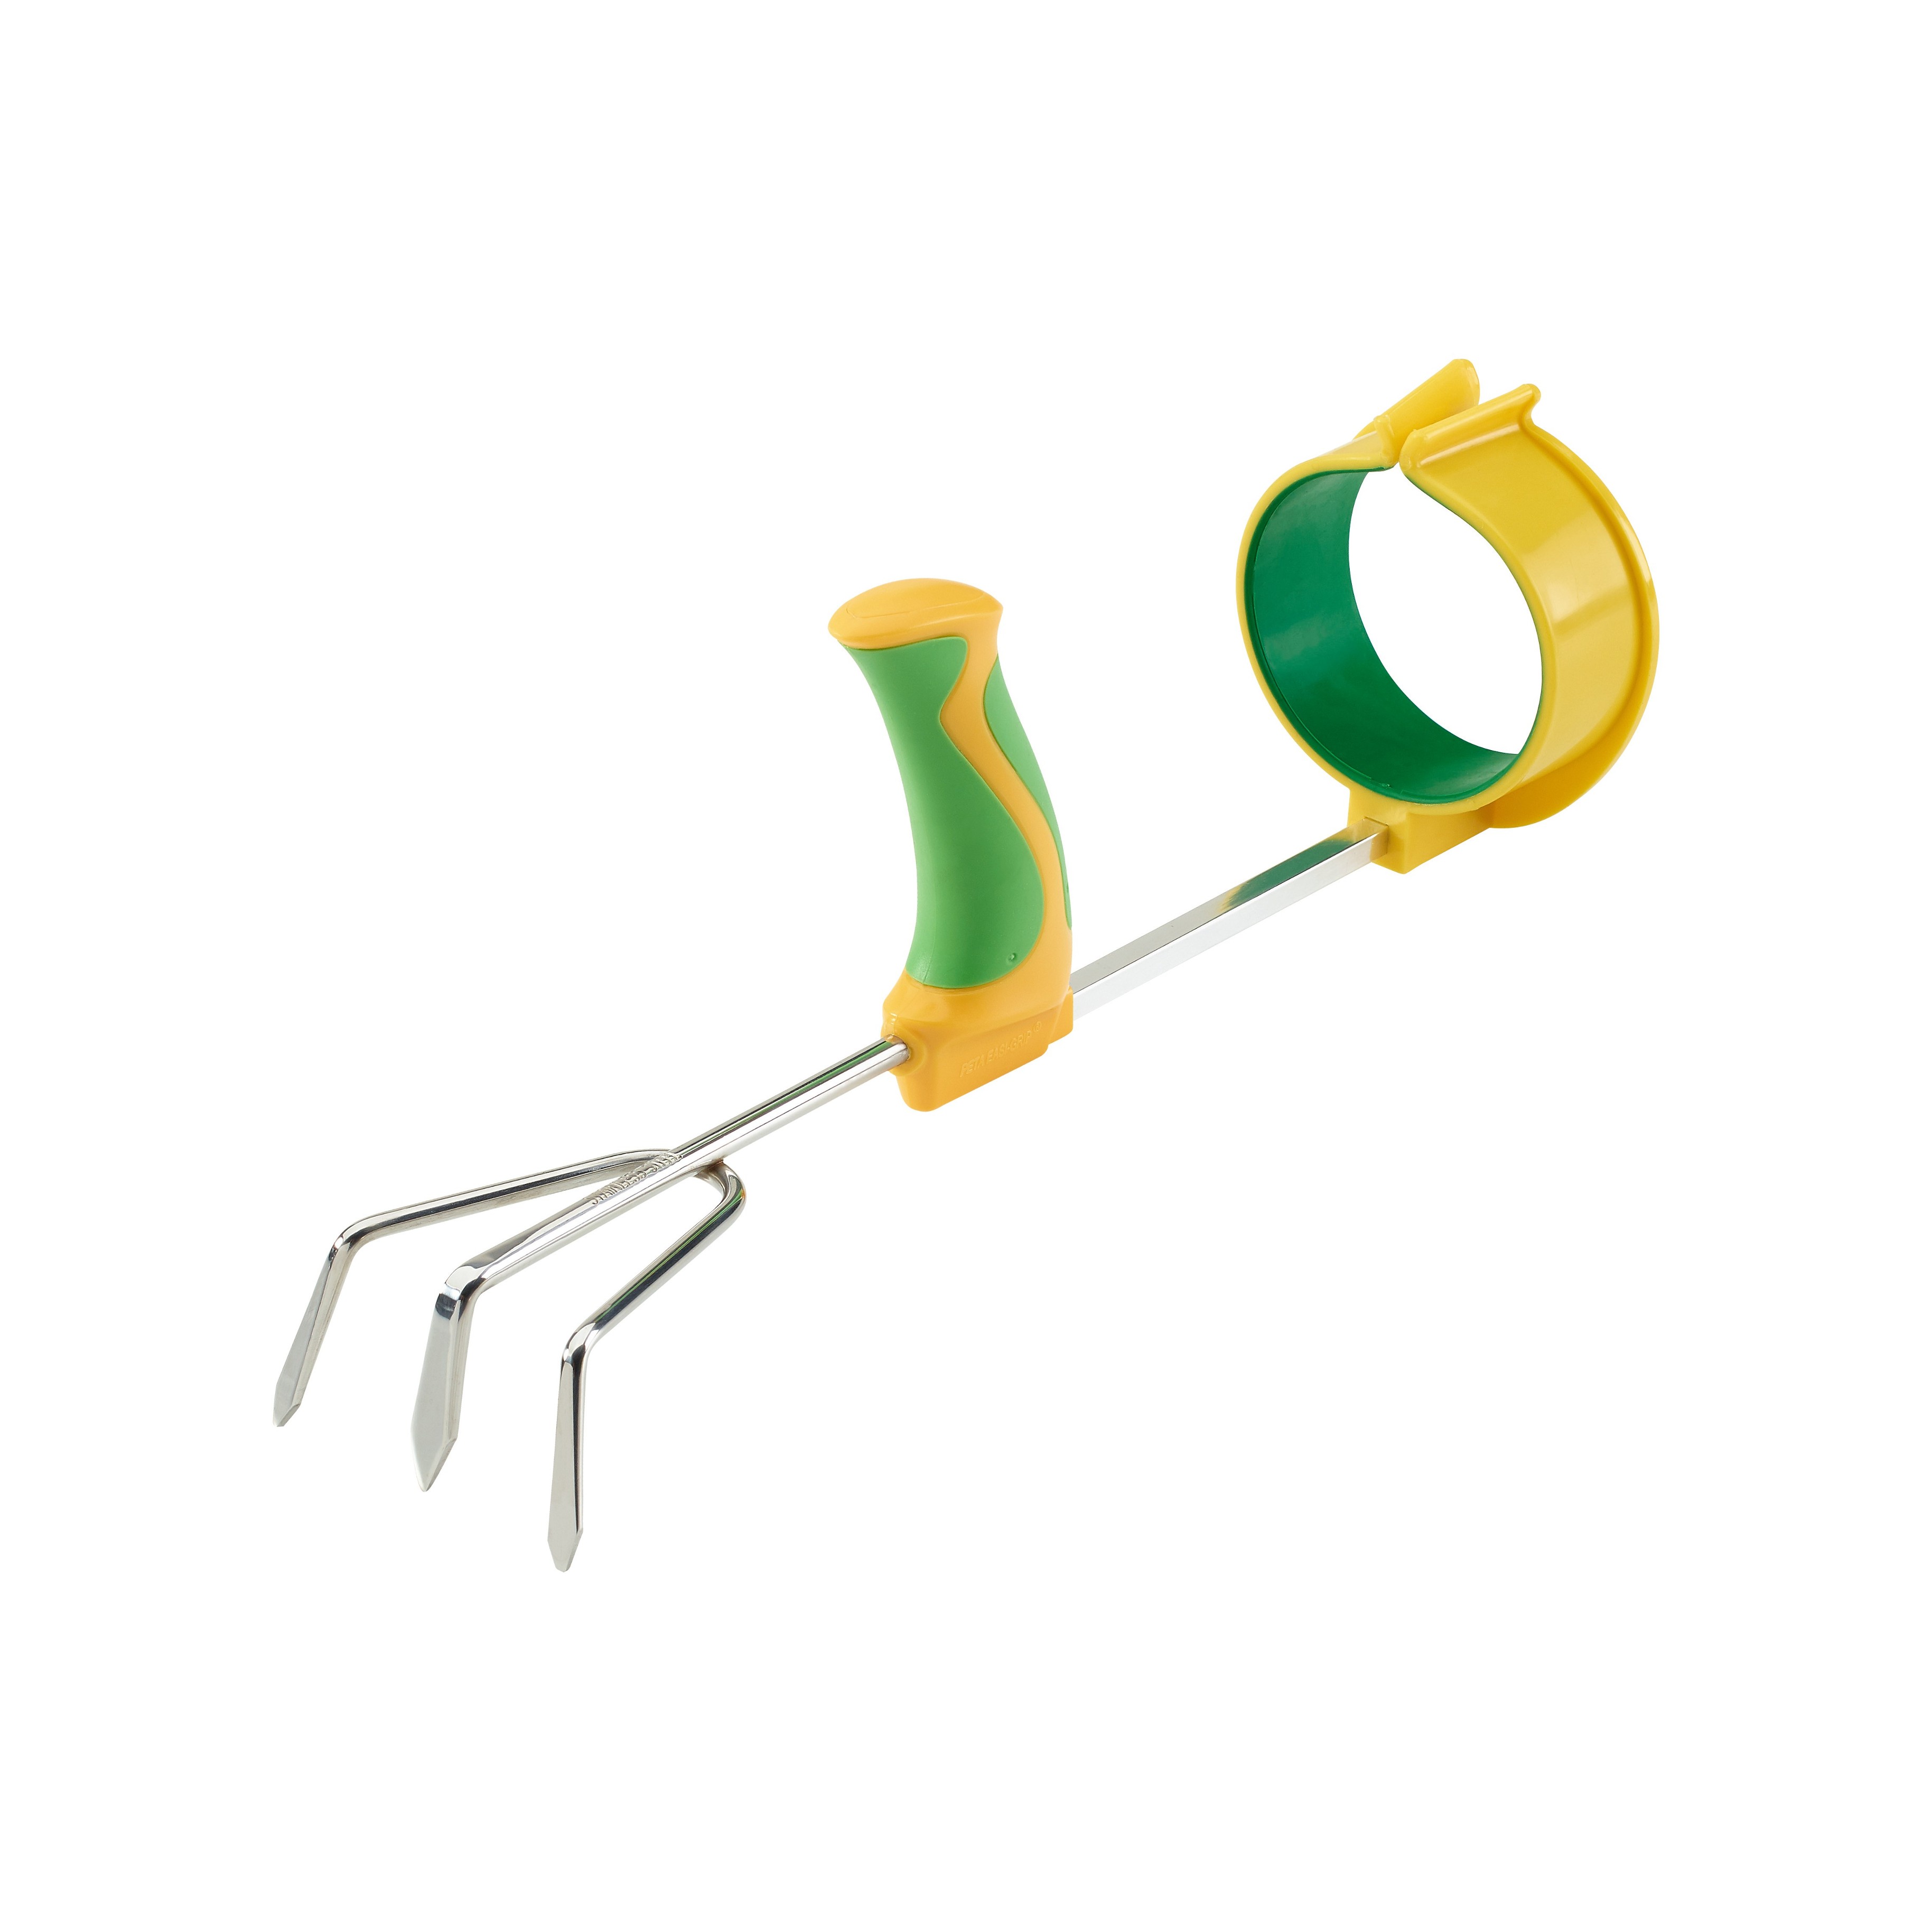 Peta Easi-Grip Garden Tools Set of 4 :: arthritis garden hand tools